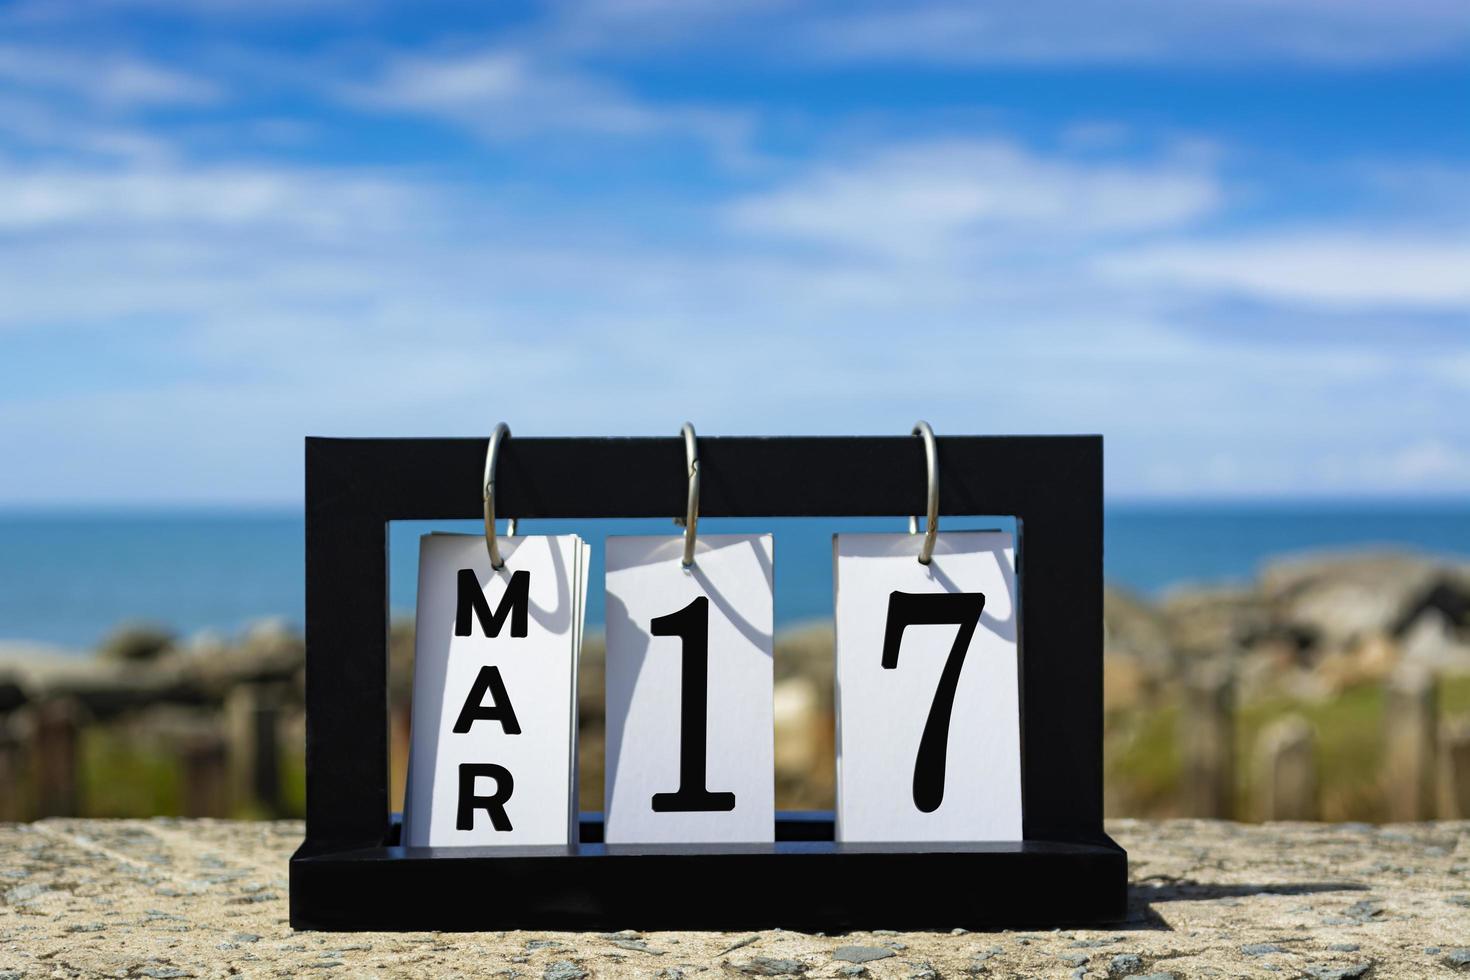 17 mars texte de la date du calendrier sur cadre en bois avec arrière-plan flou de l'océan. photo